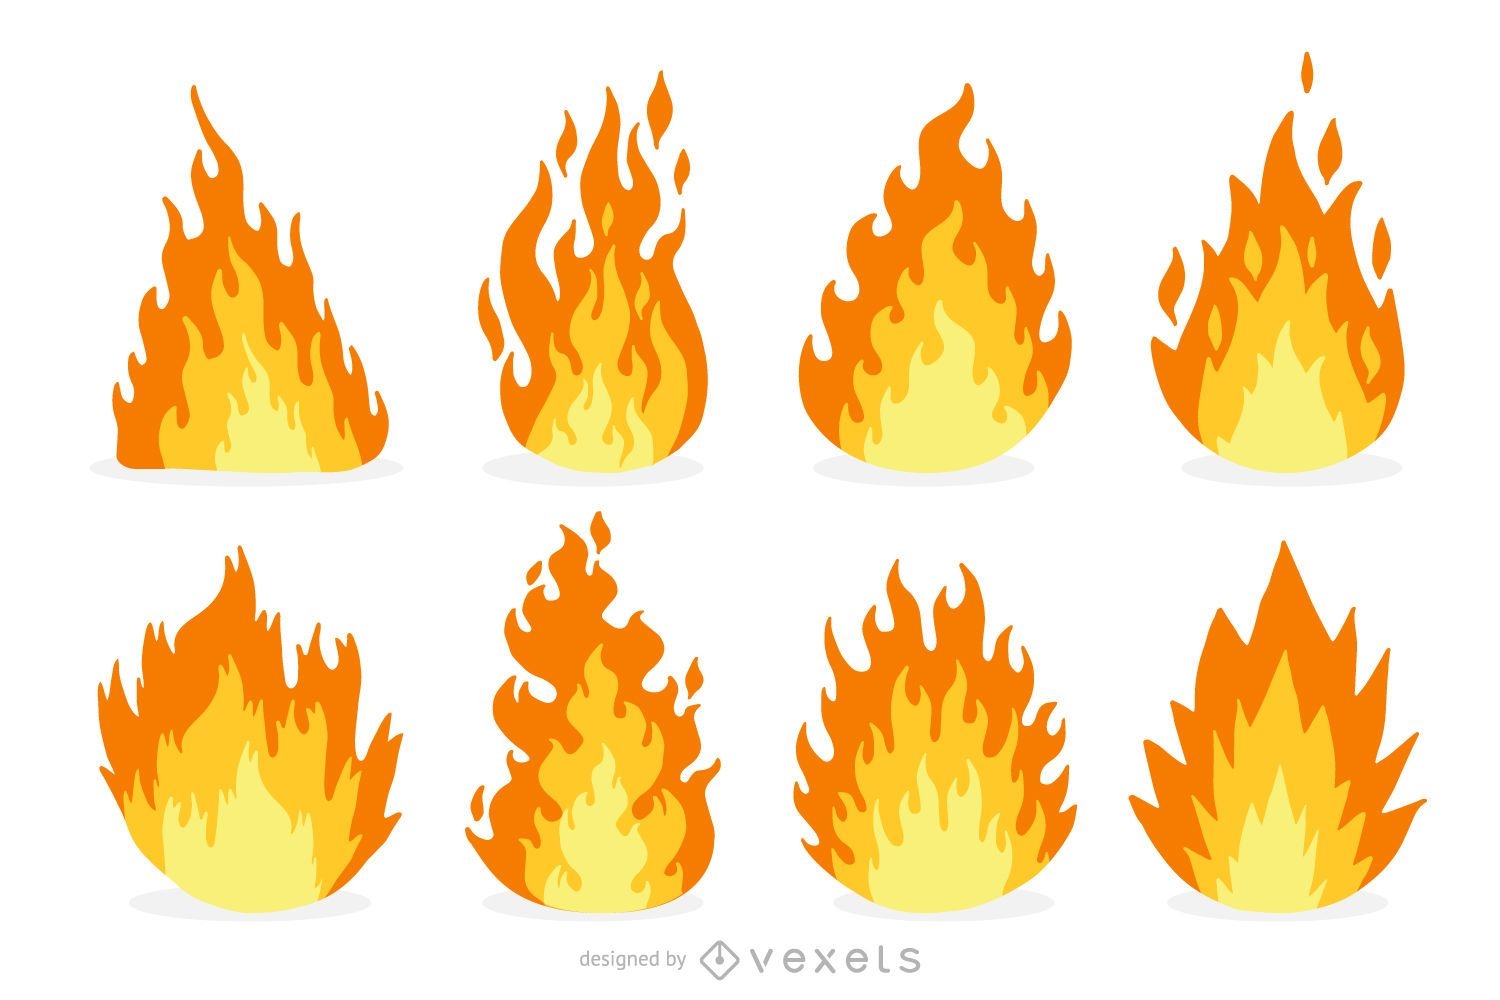 Fire and flame cartoon set